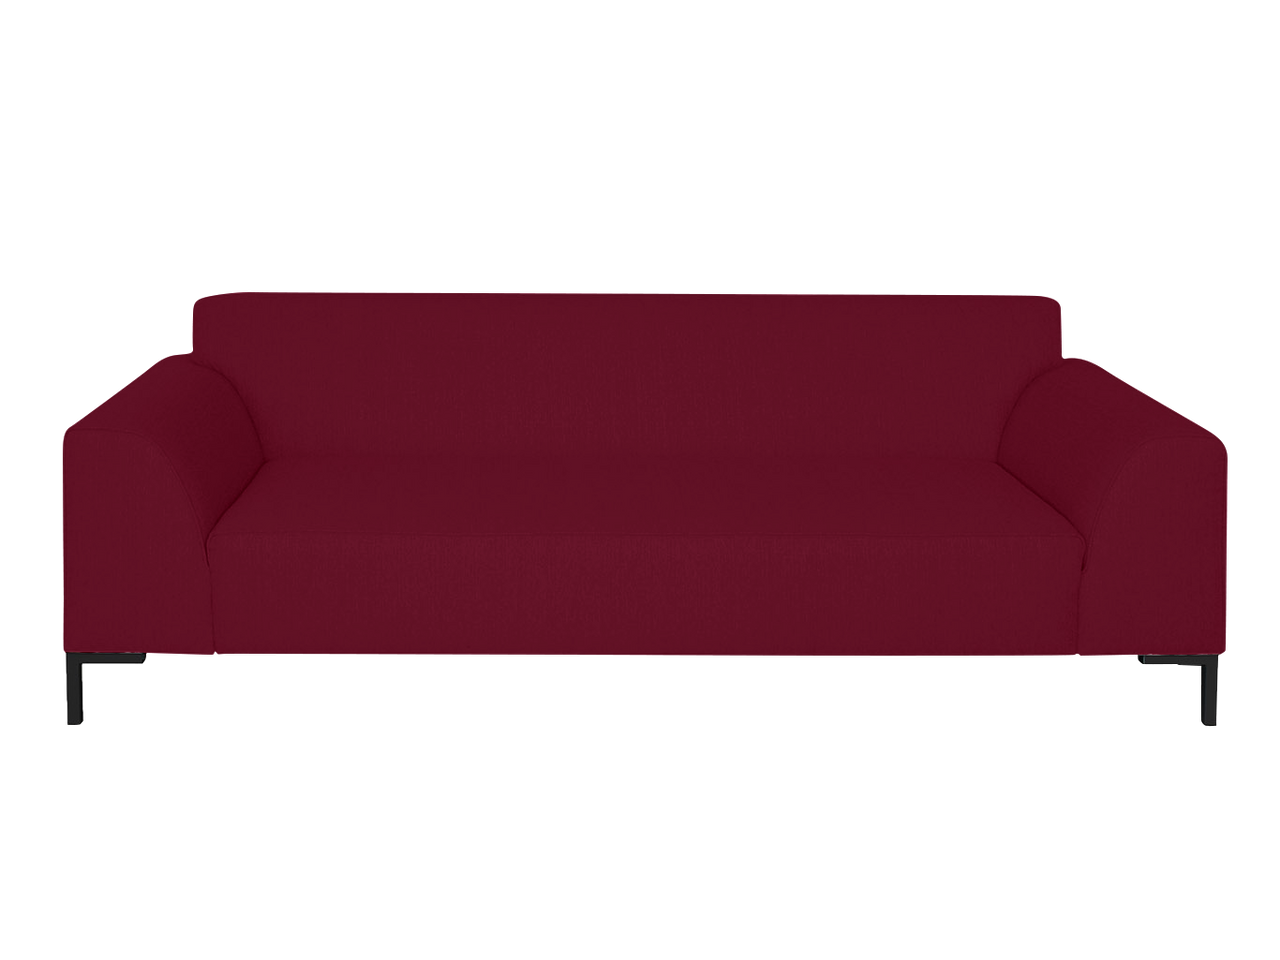 X4 sofa design